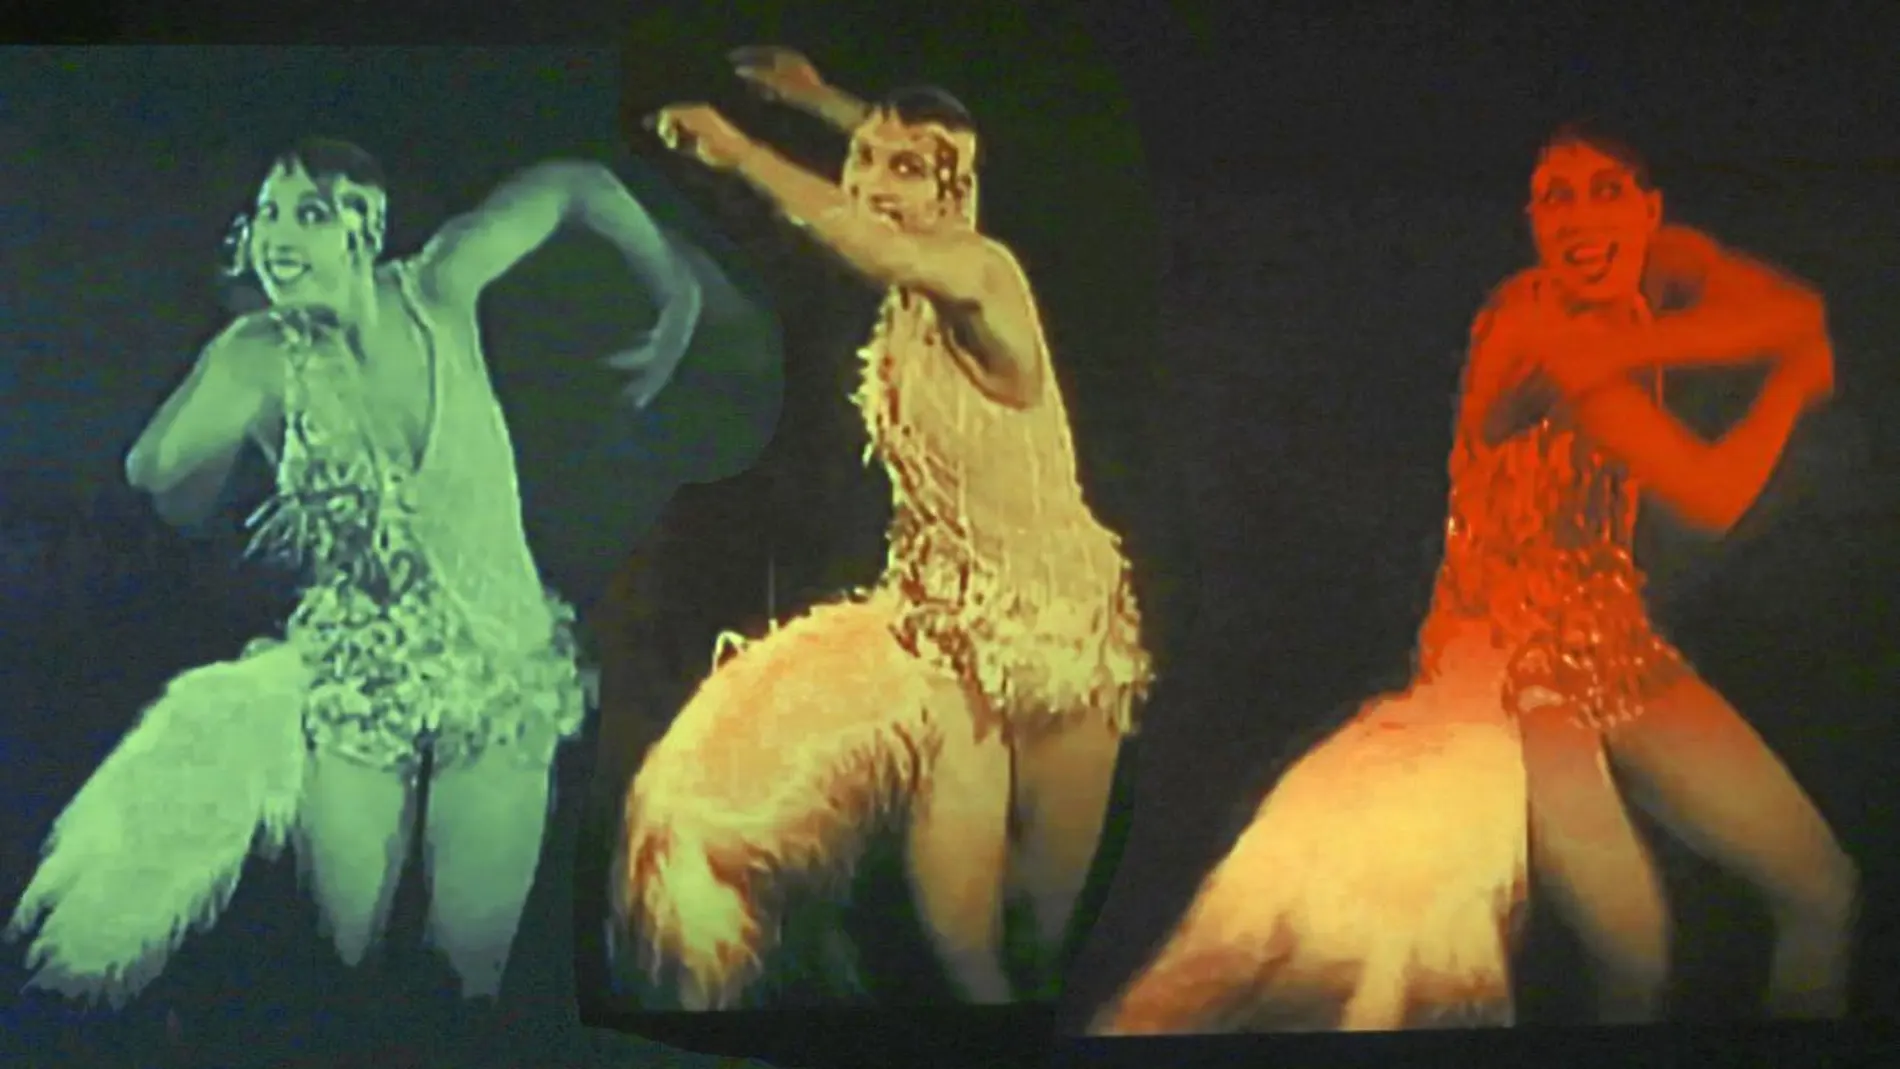 Un icono. Joséphine Baker revolucionó los escenarios con su manera de bailar y después se convirtió en una celebridad que luchó por los derechos humanos